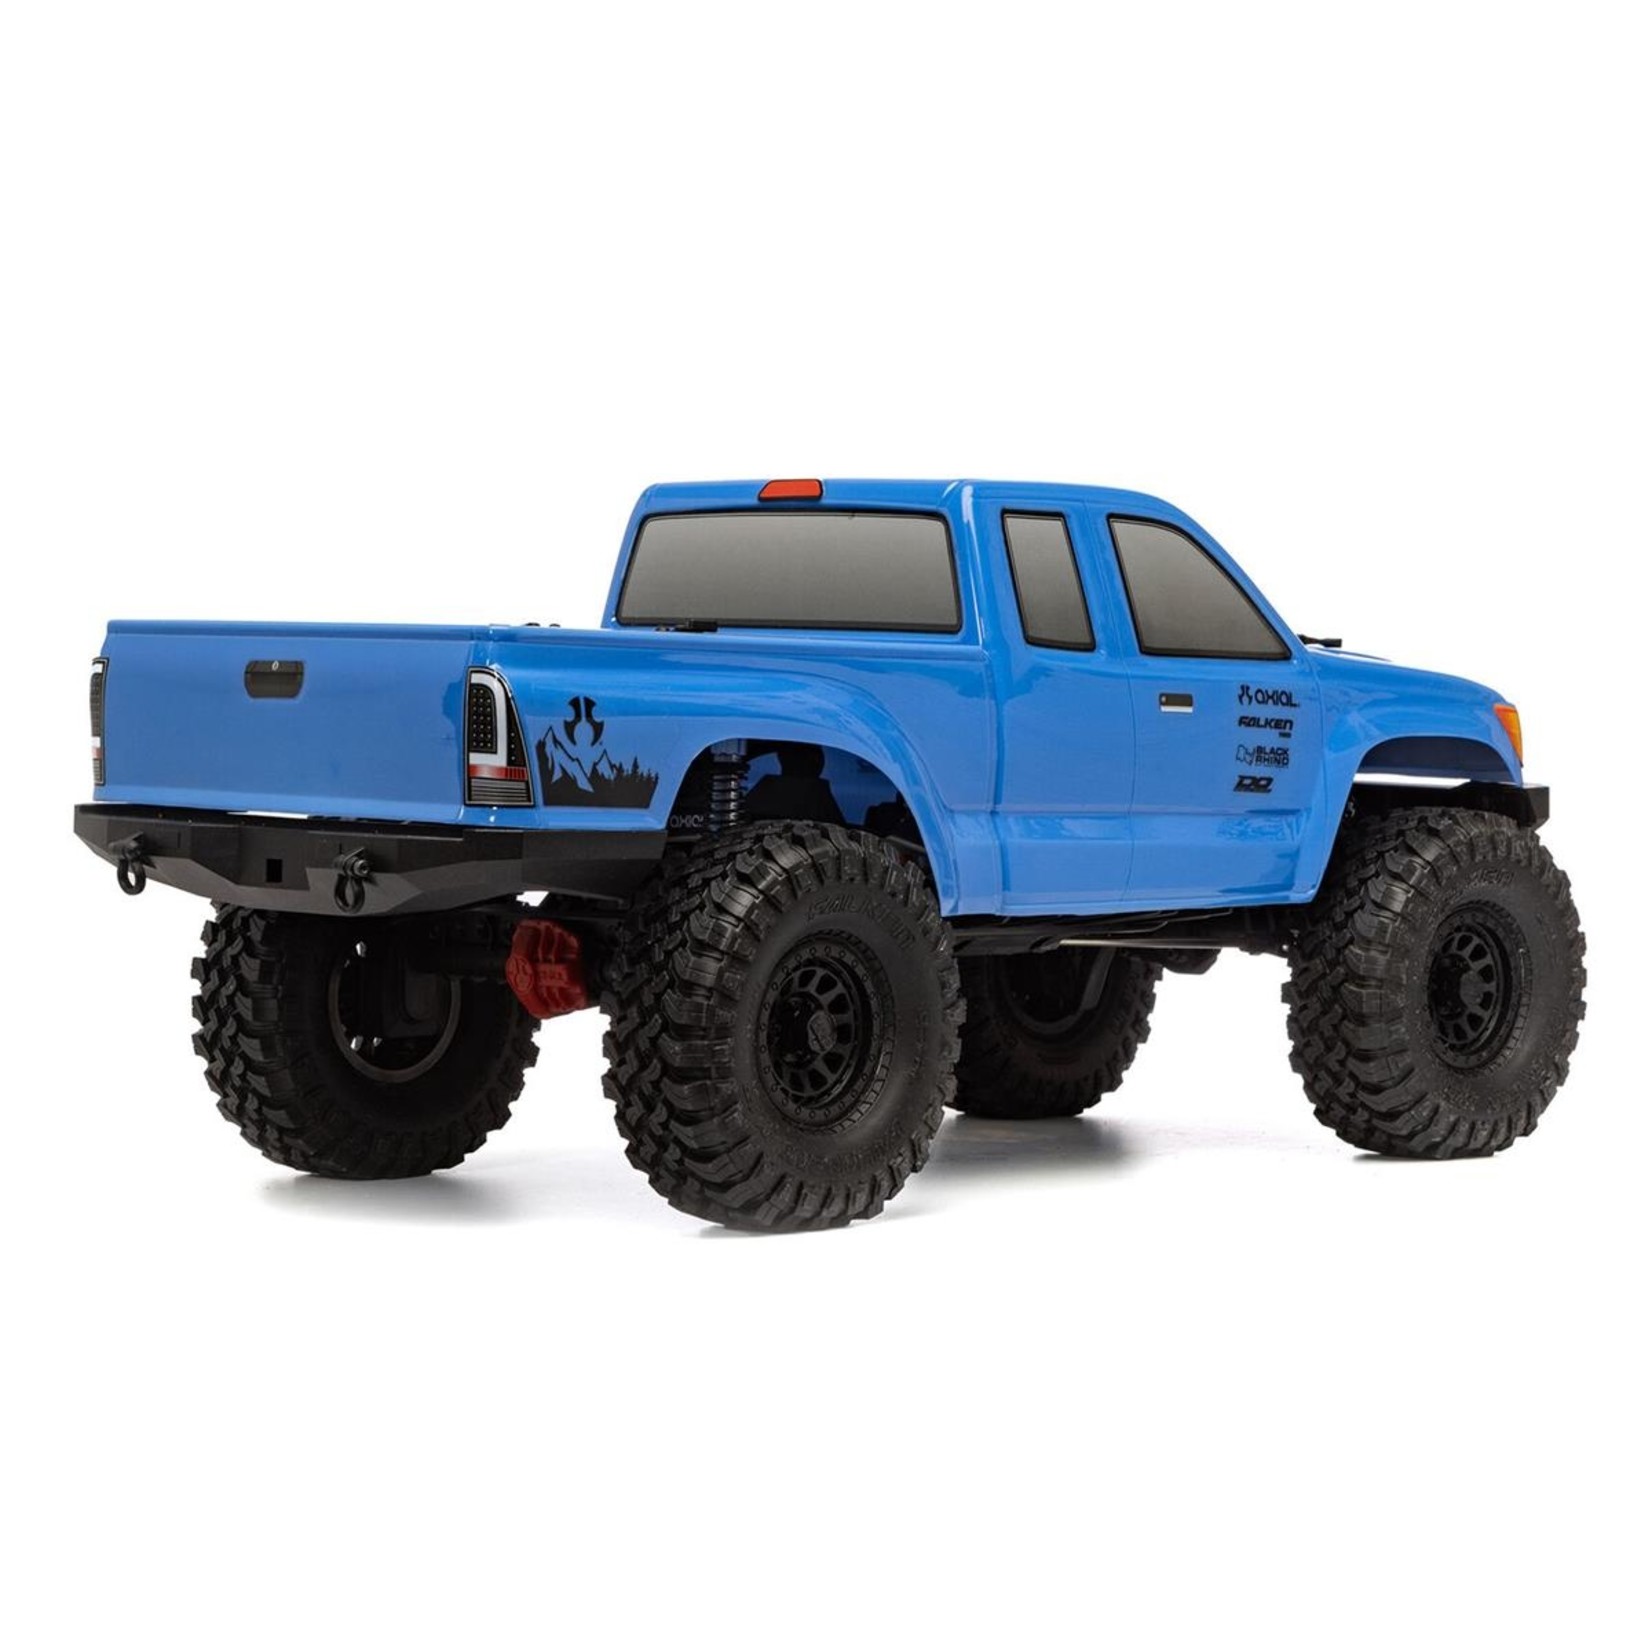 Axial Axial SCX10 III "Base Camp" RTR 4WD Rock Crawler (Blue) w/SLT3 2.4GHz Radio #AXI03027T1